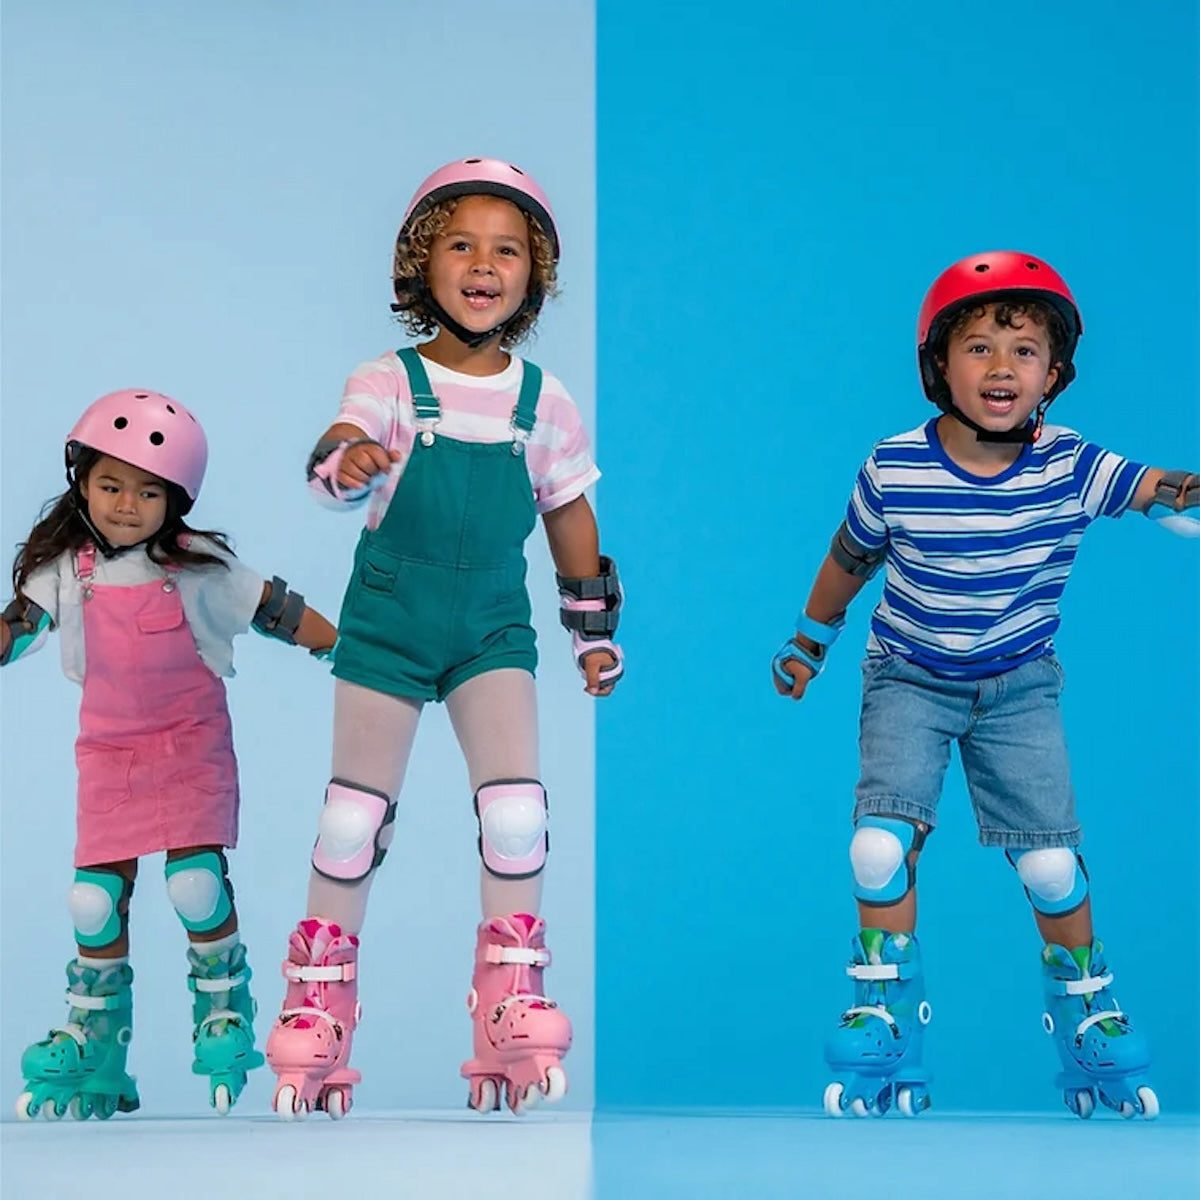 De perfecte kinderskeelers: de Twista skates roze van het merk Yvolution. Verstelbaar met een druk op de knop. Ook aan te passen naar 2 wielen naast elkaar voor meer balans. VanZus